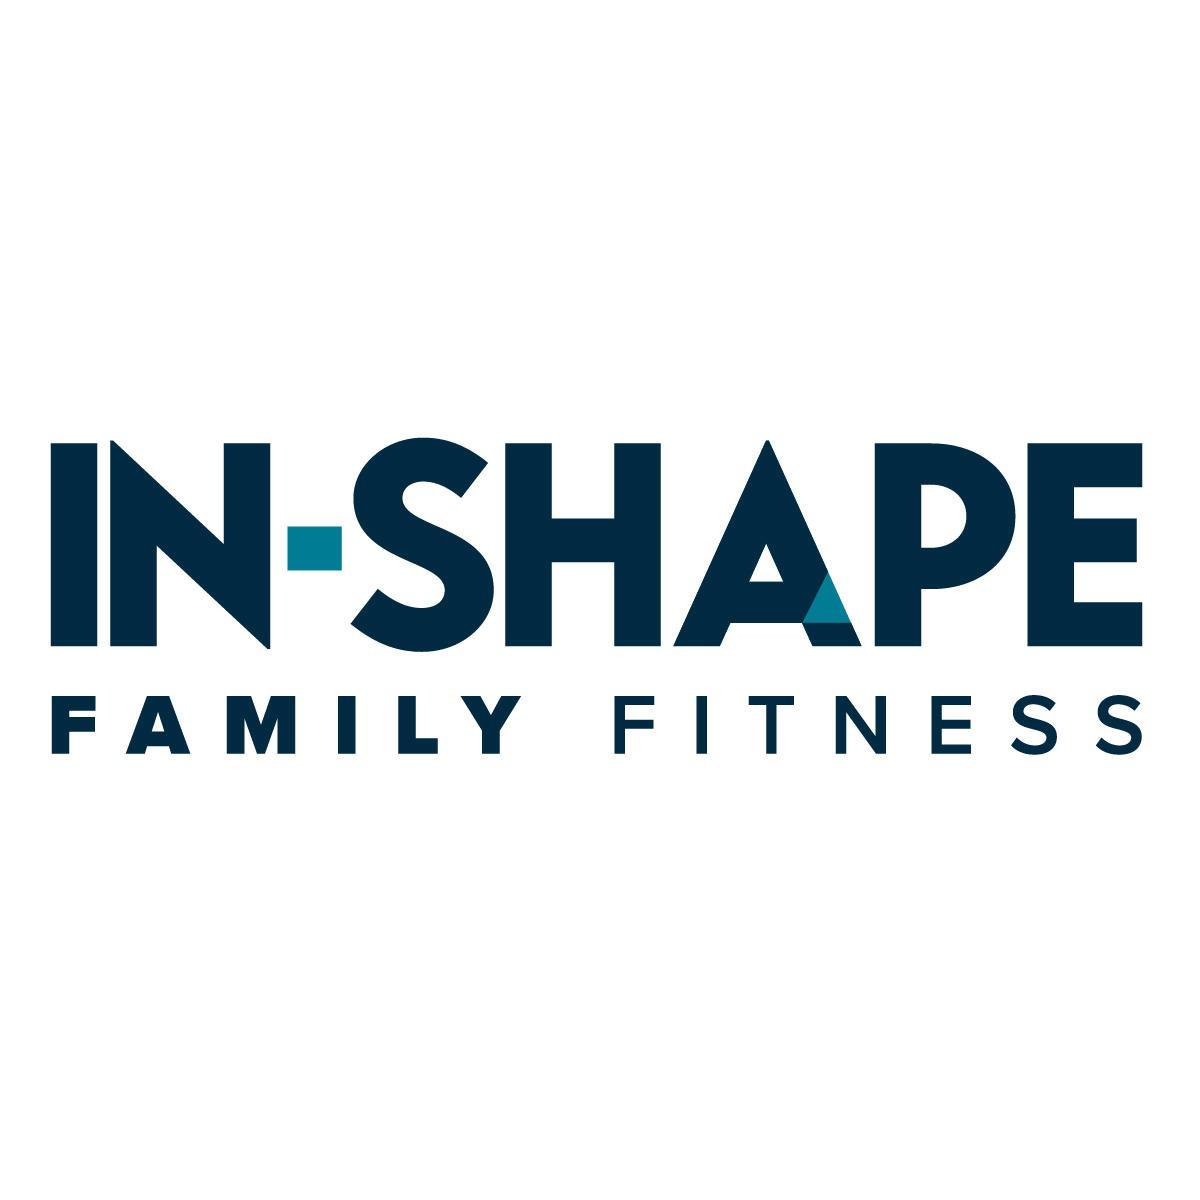 In-Shape Family Fitness - Sacramento, CA 95816 - (916)457-9300 | ShowMeLocal.com